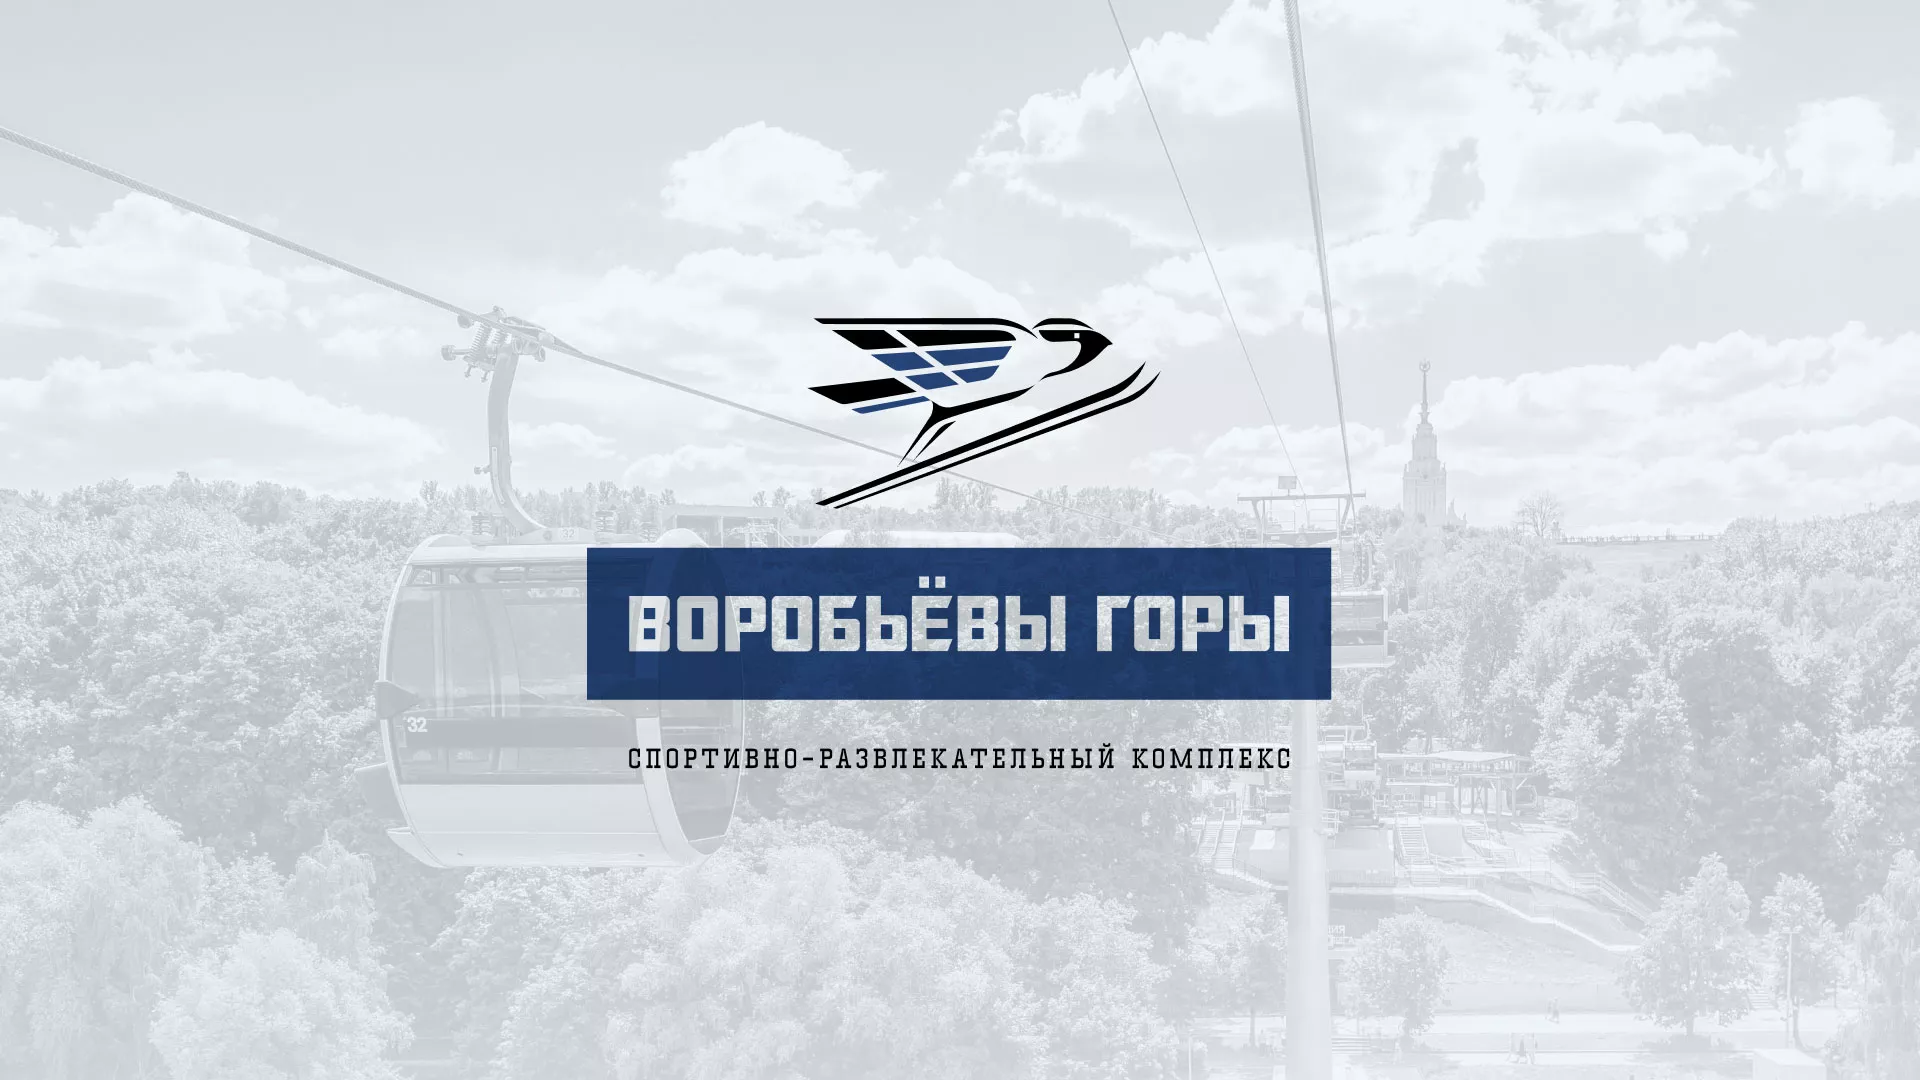 Разработка сайта в Новотроицке для спортивно-развлекательного комплекса «Воробьёвы горы»